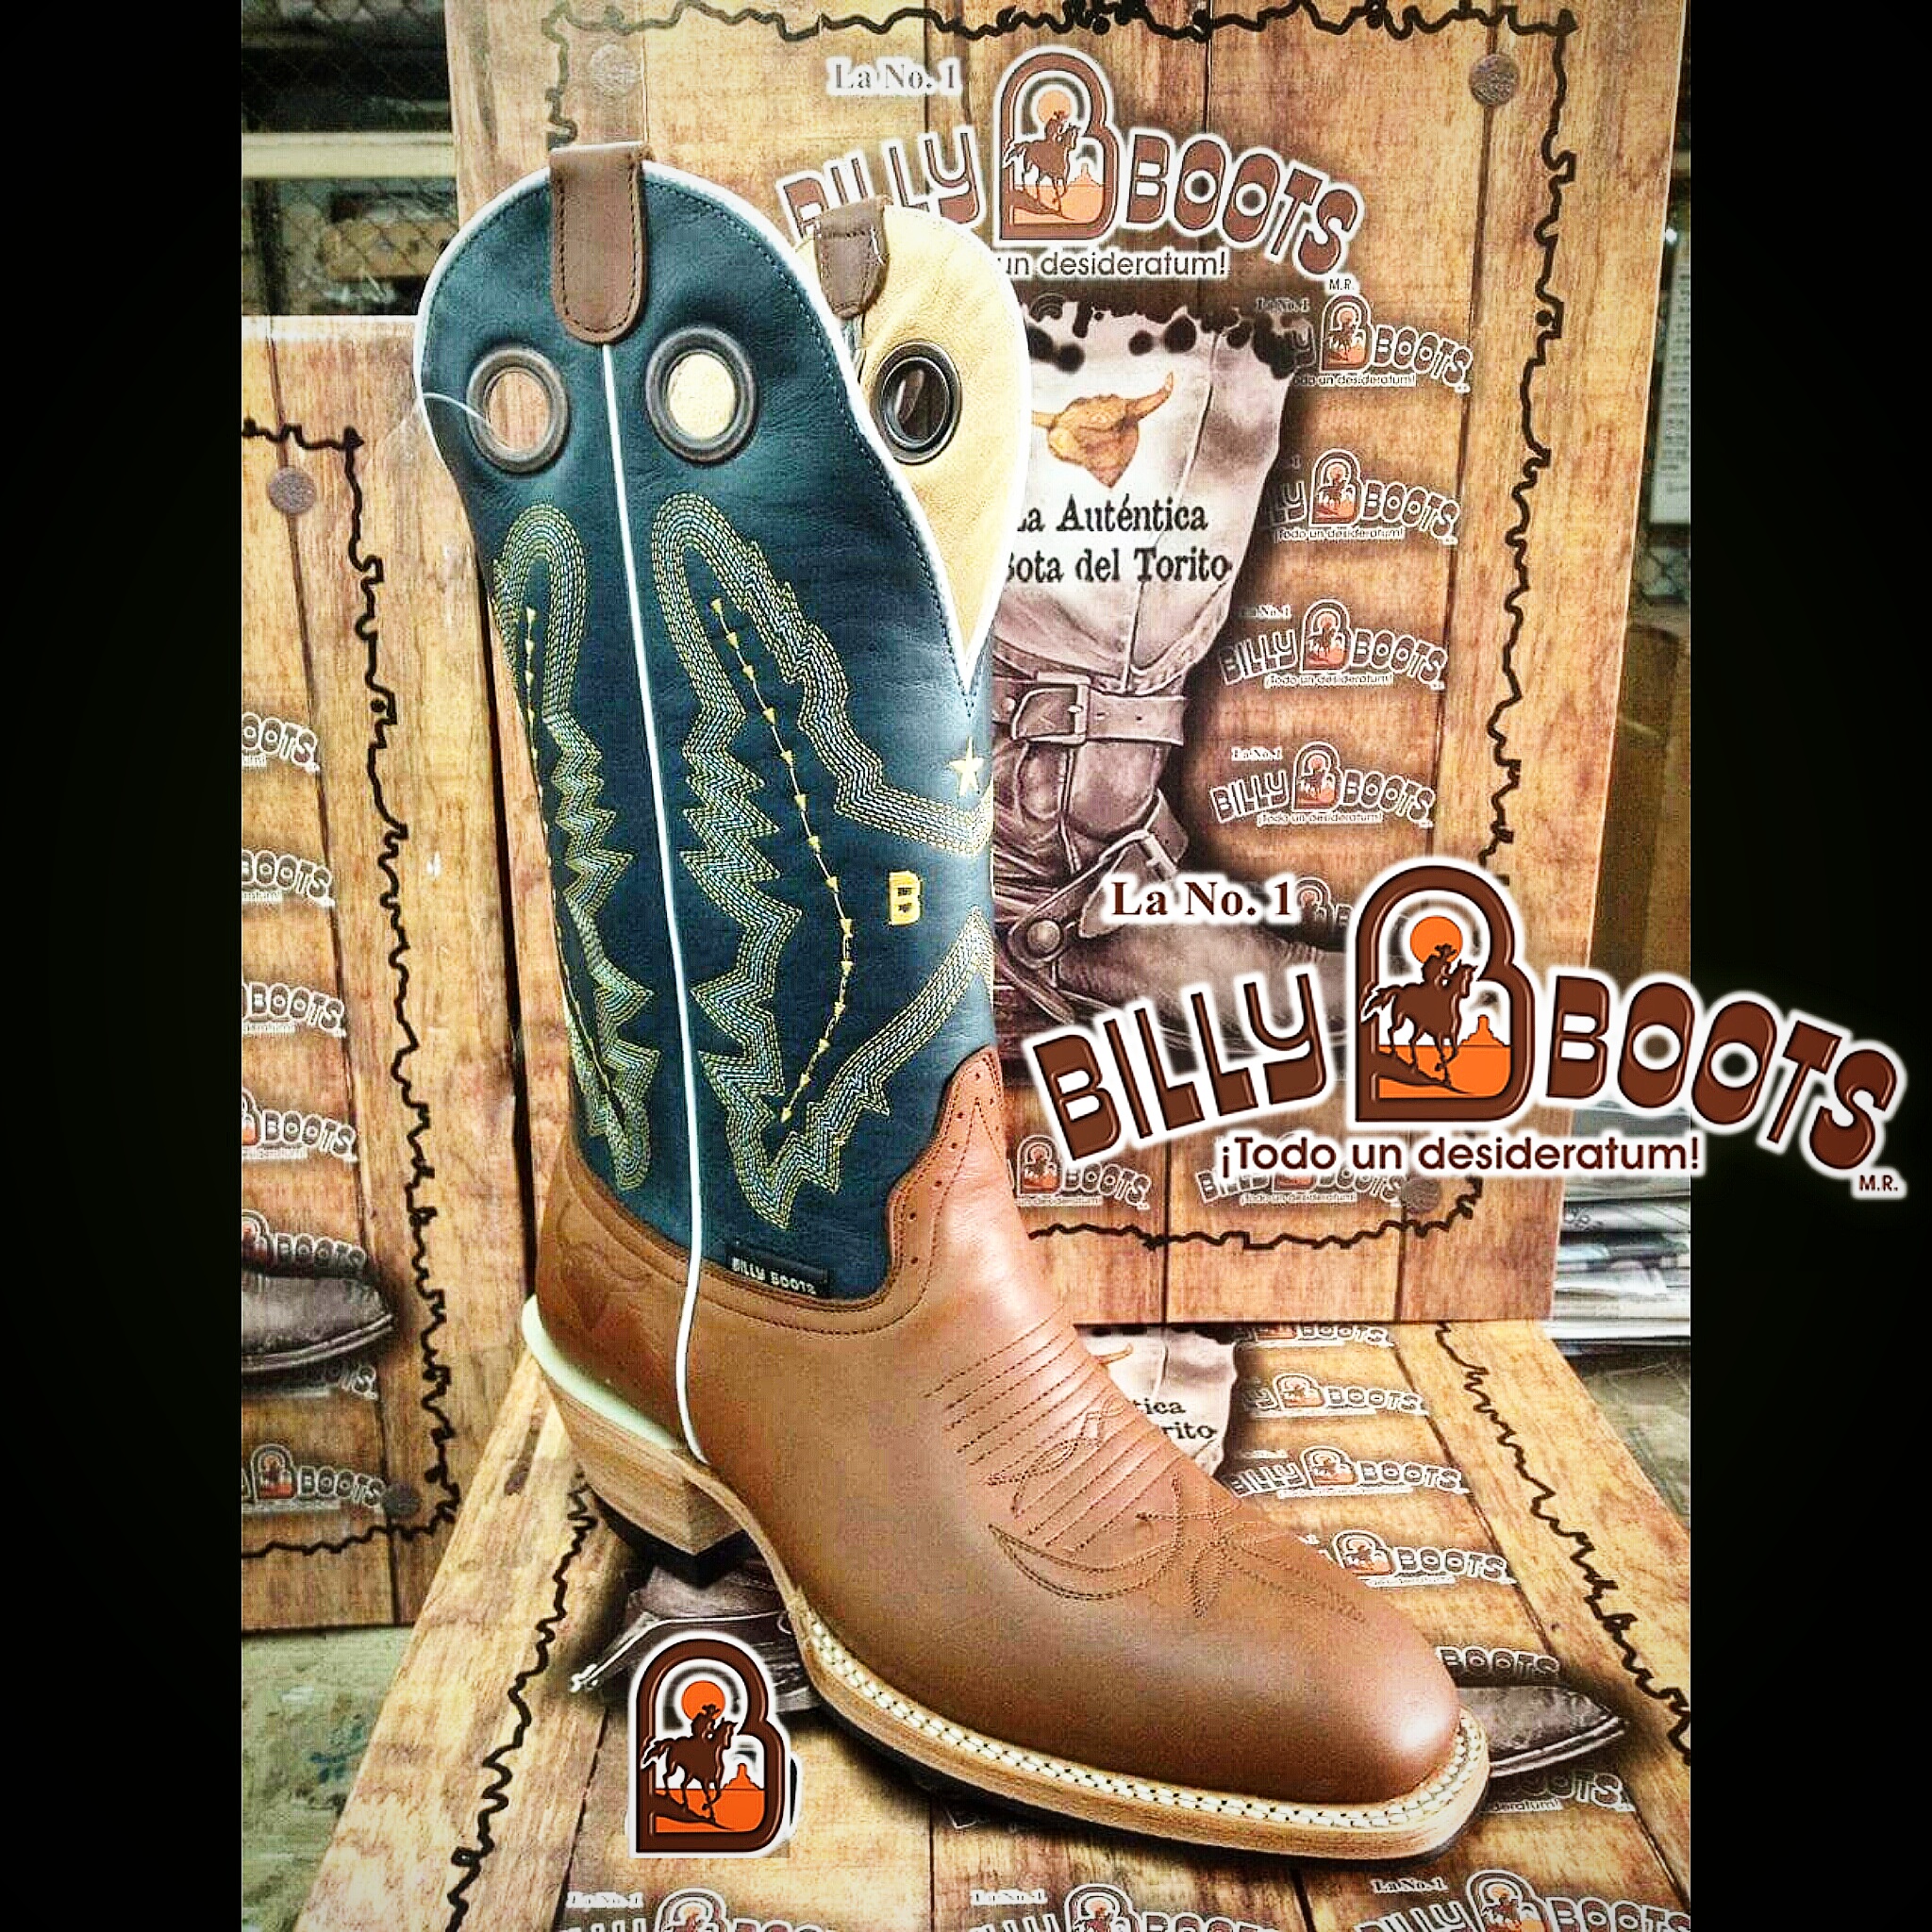 slip resistant cowboy boots